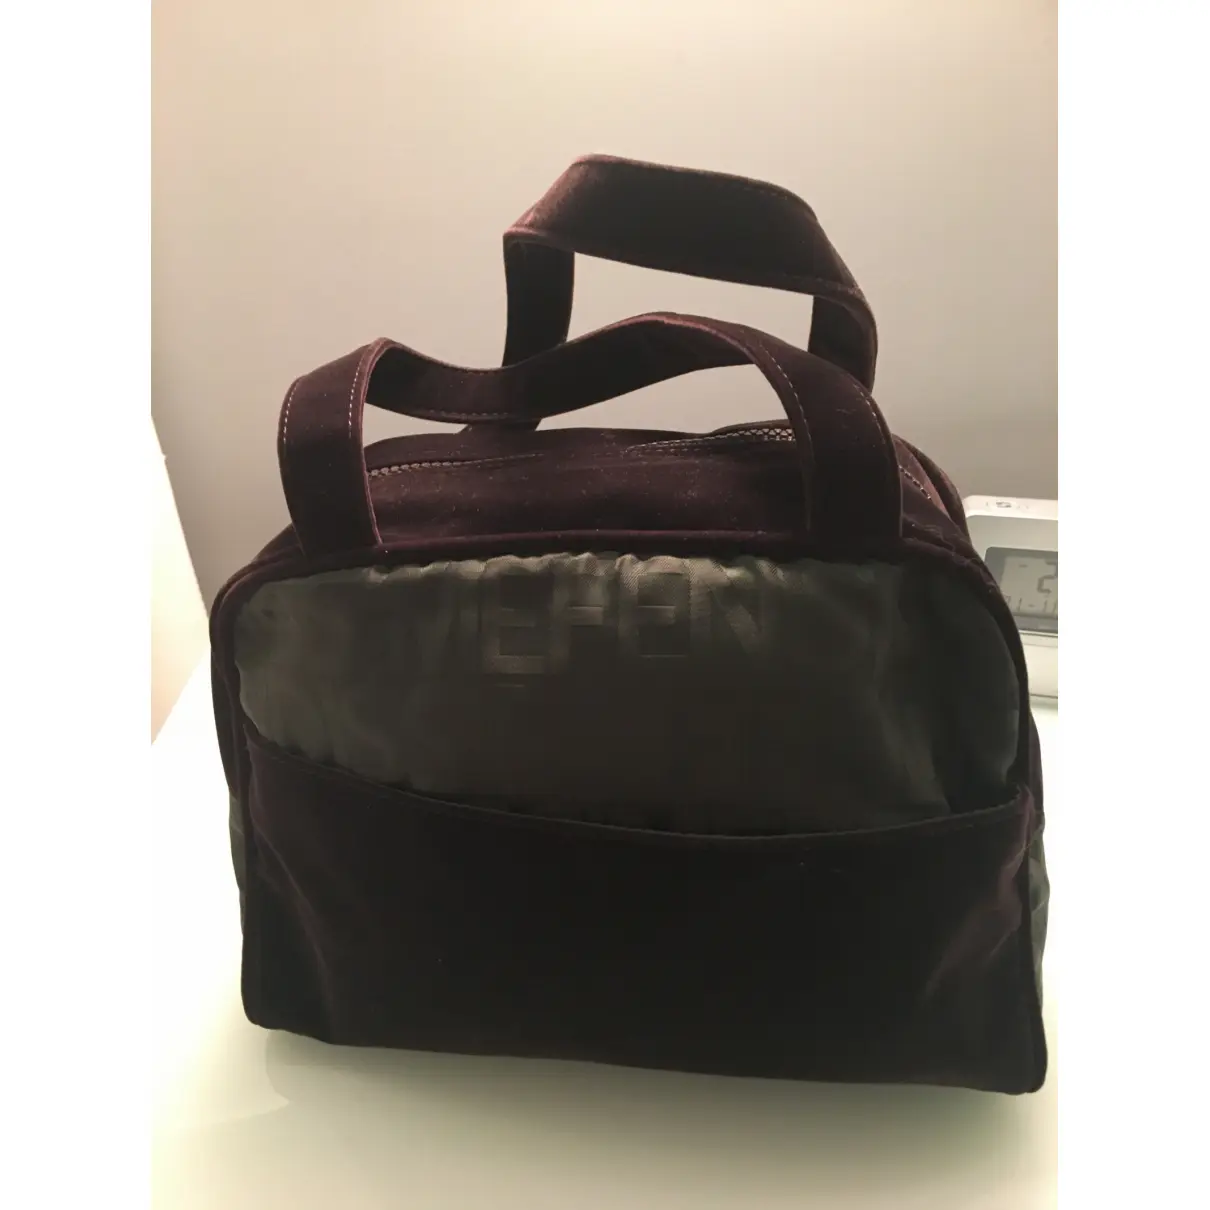 Velvet handbag Fendissime